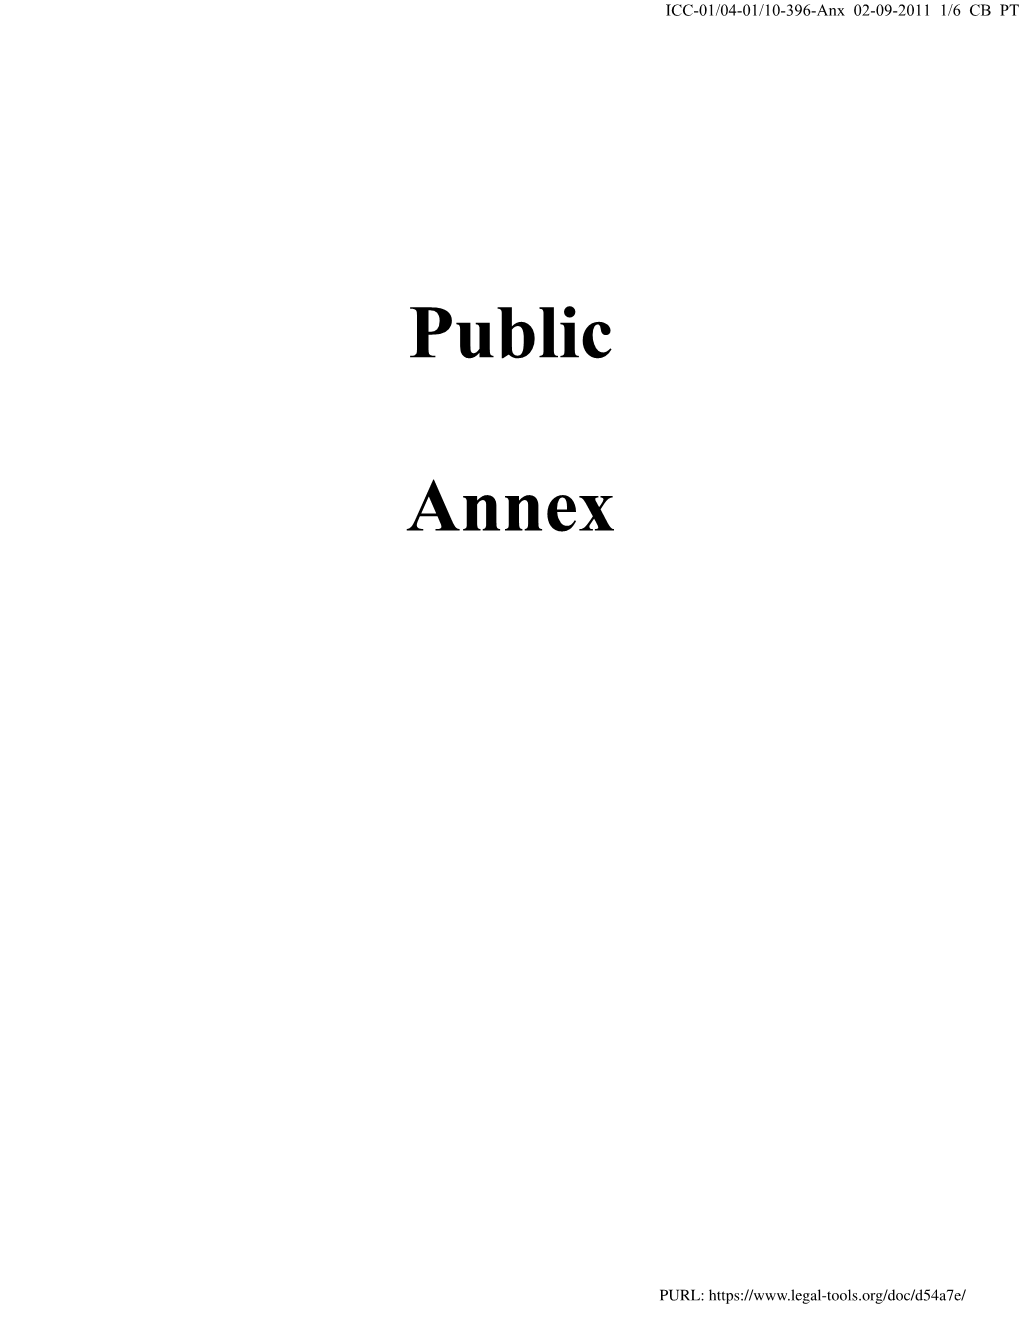 Public Annex